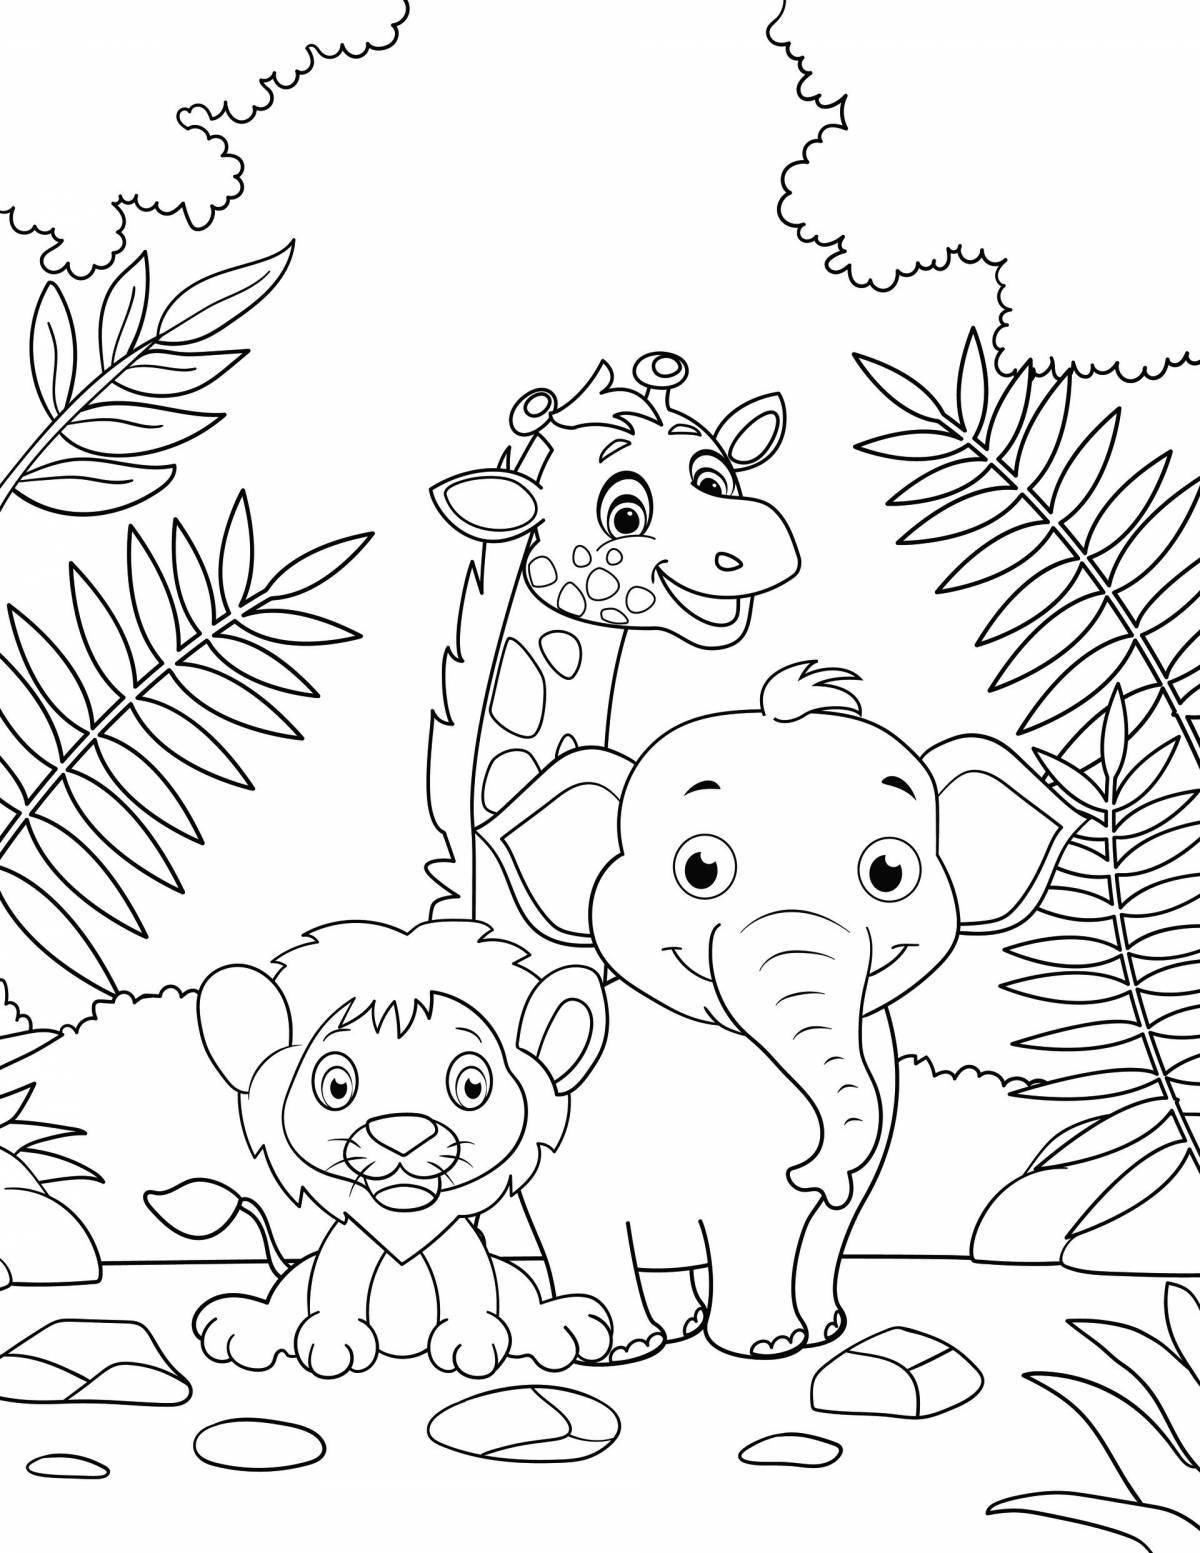 Fun zoo coloring book